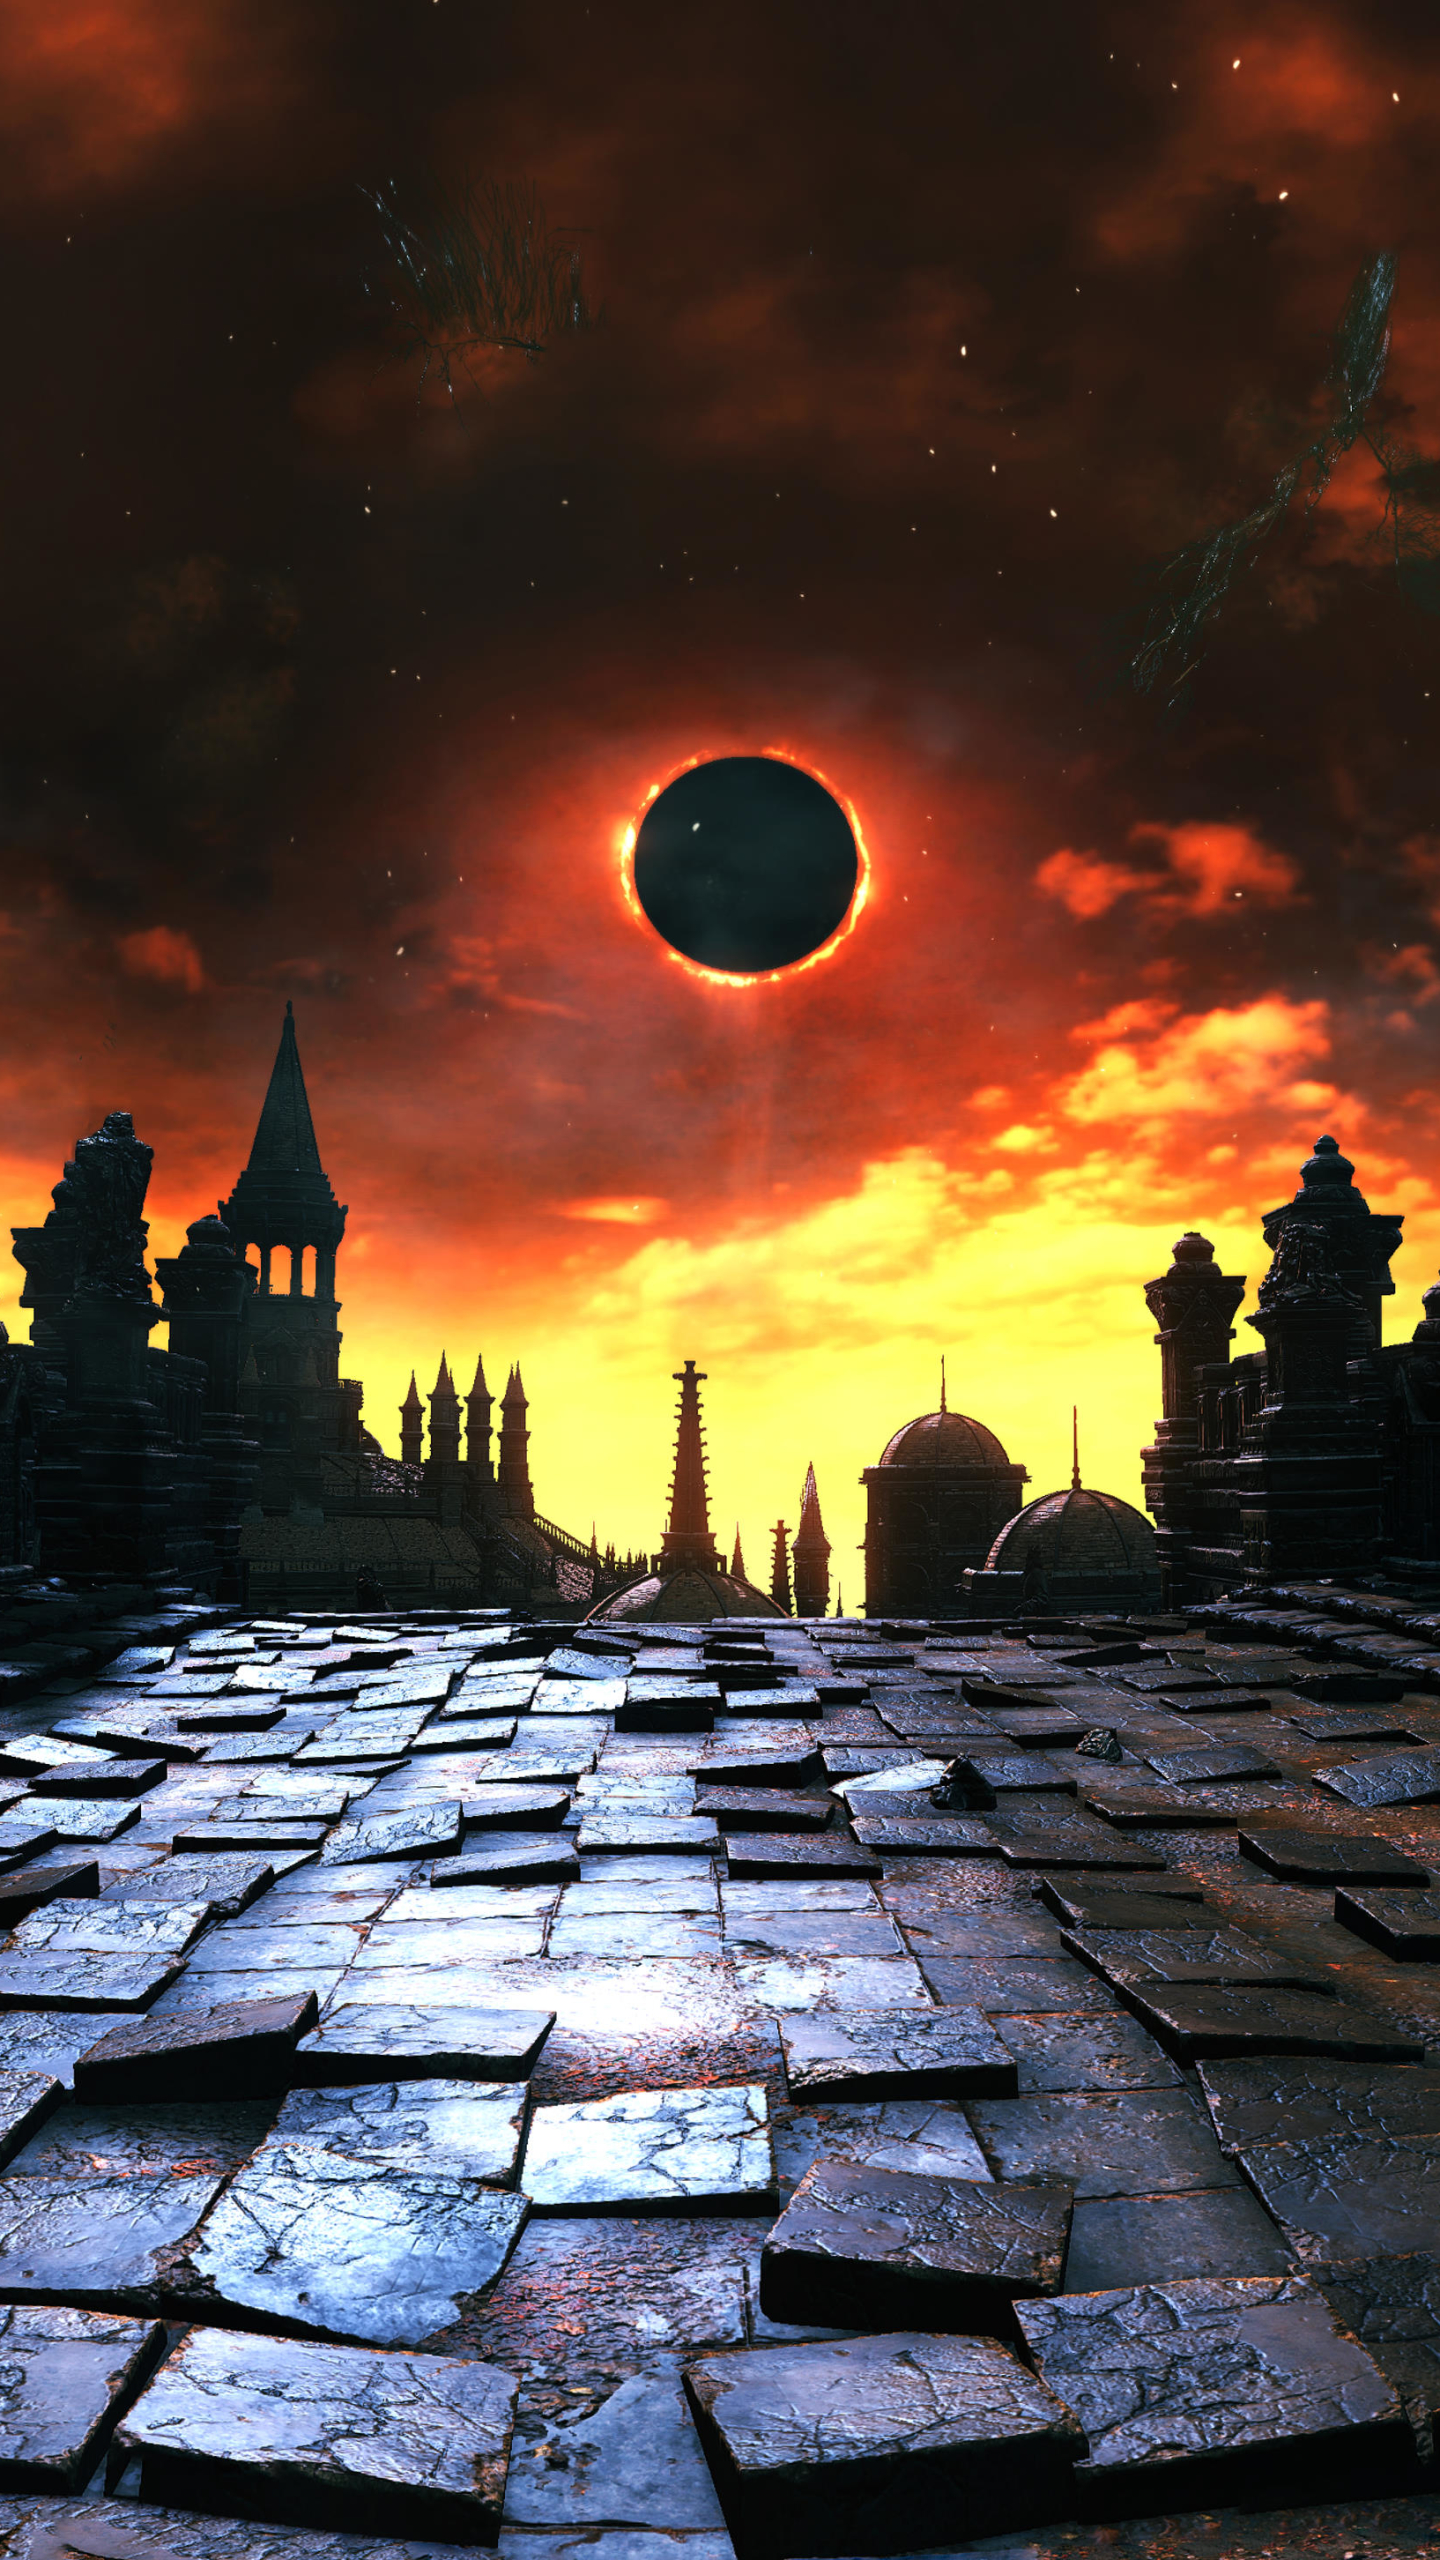 dark souls iii, video game, eclipse, dark souls